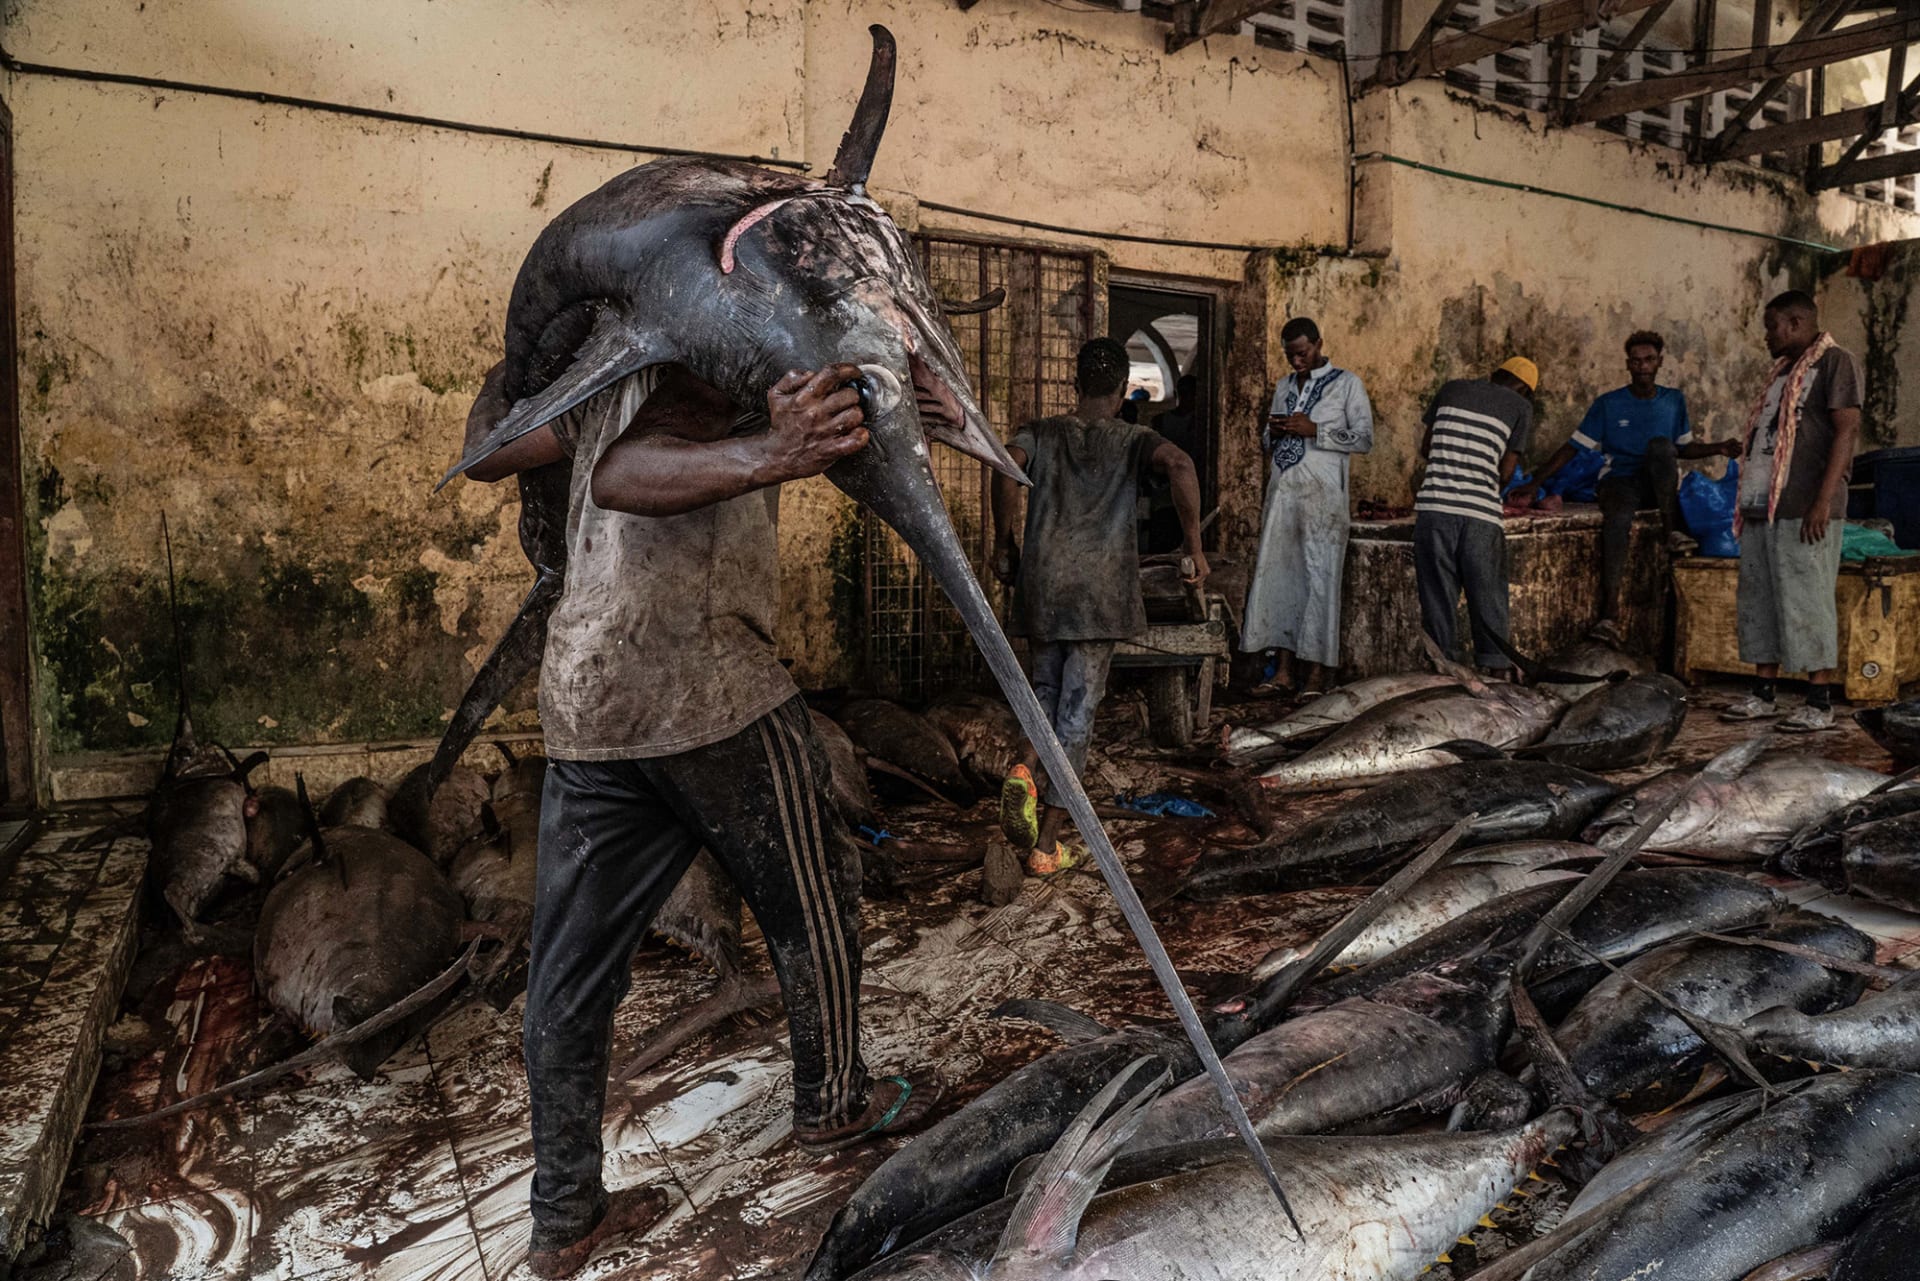 مشهد من سوق سمك في العاصمة الصومالية، مقديشو، وثّقها المصور طارق زيدي.